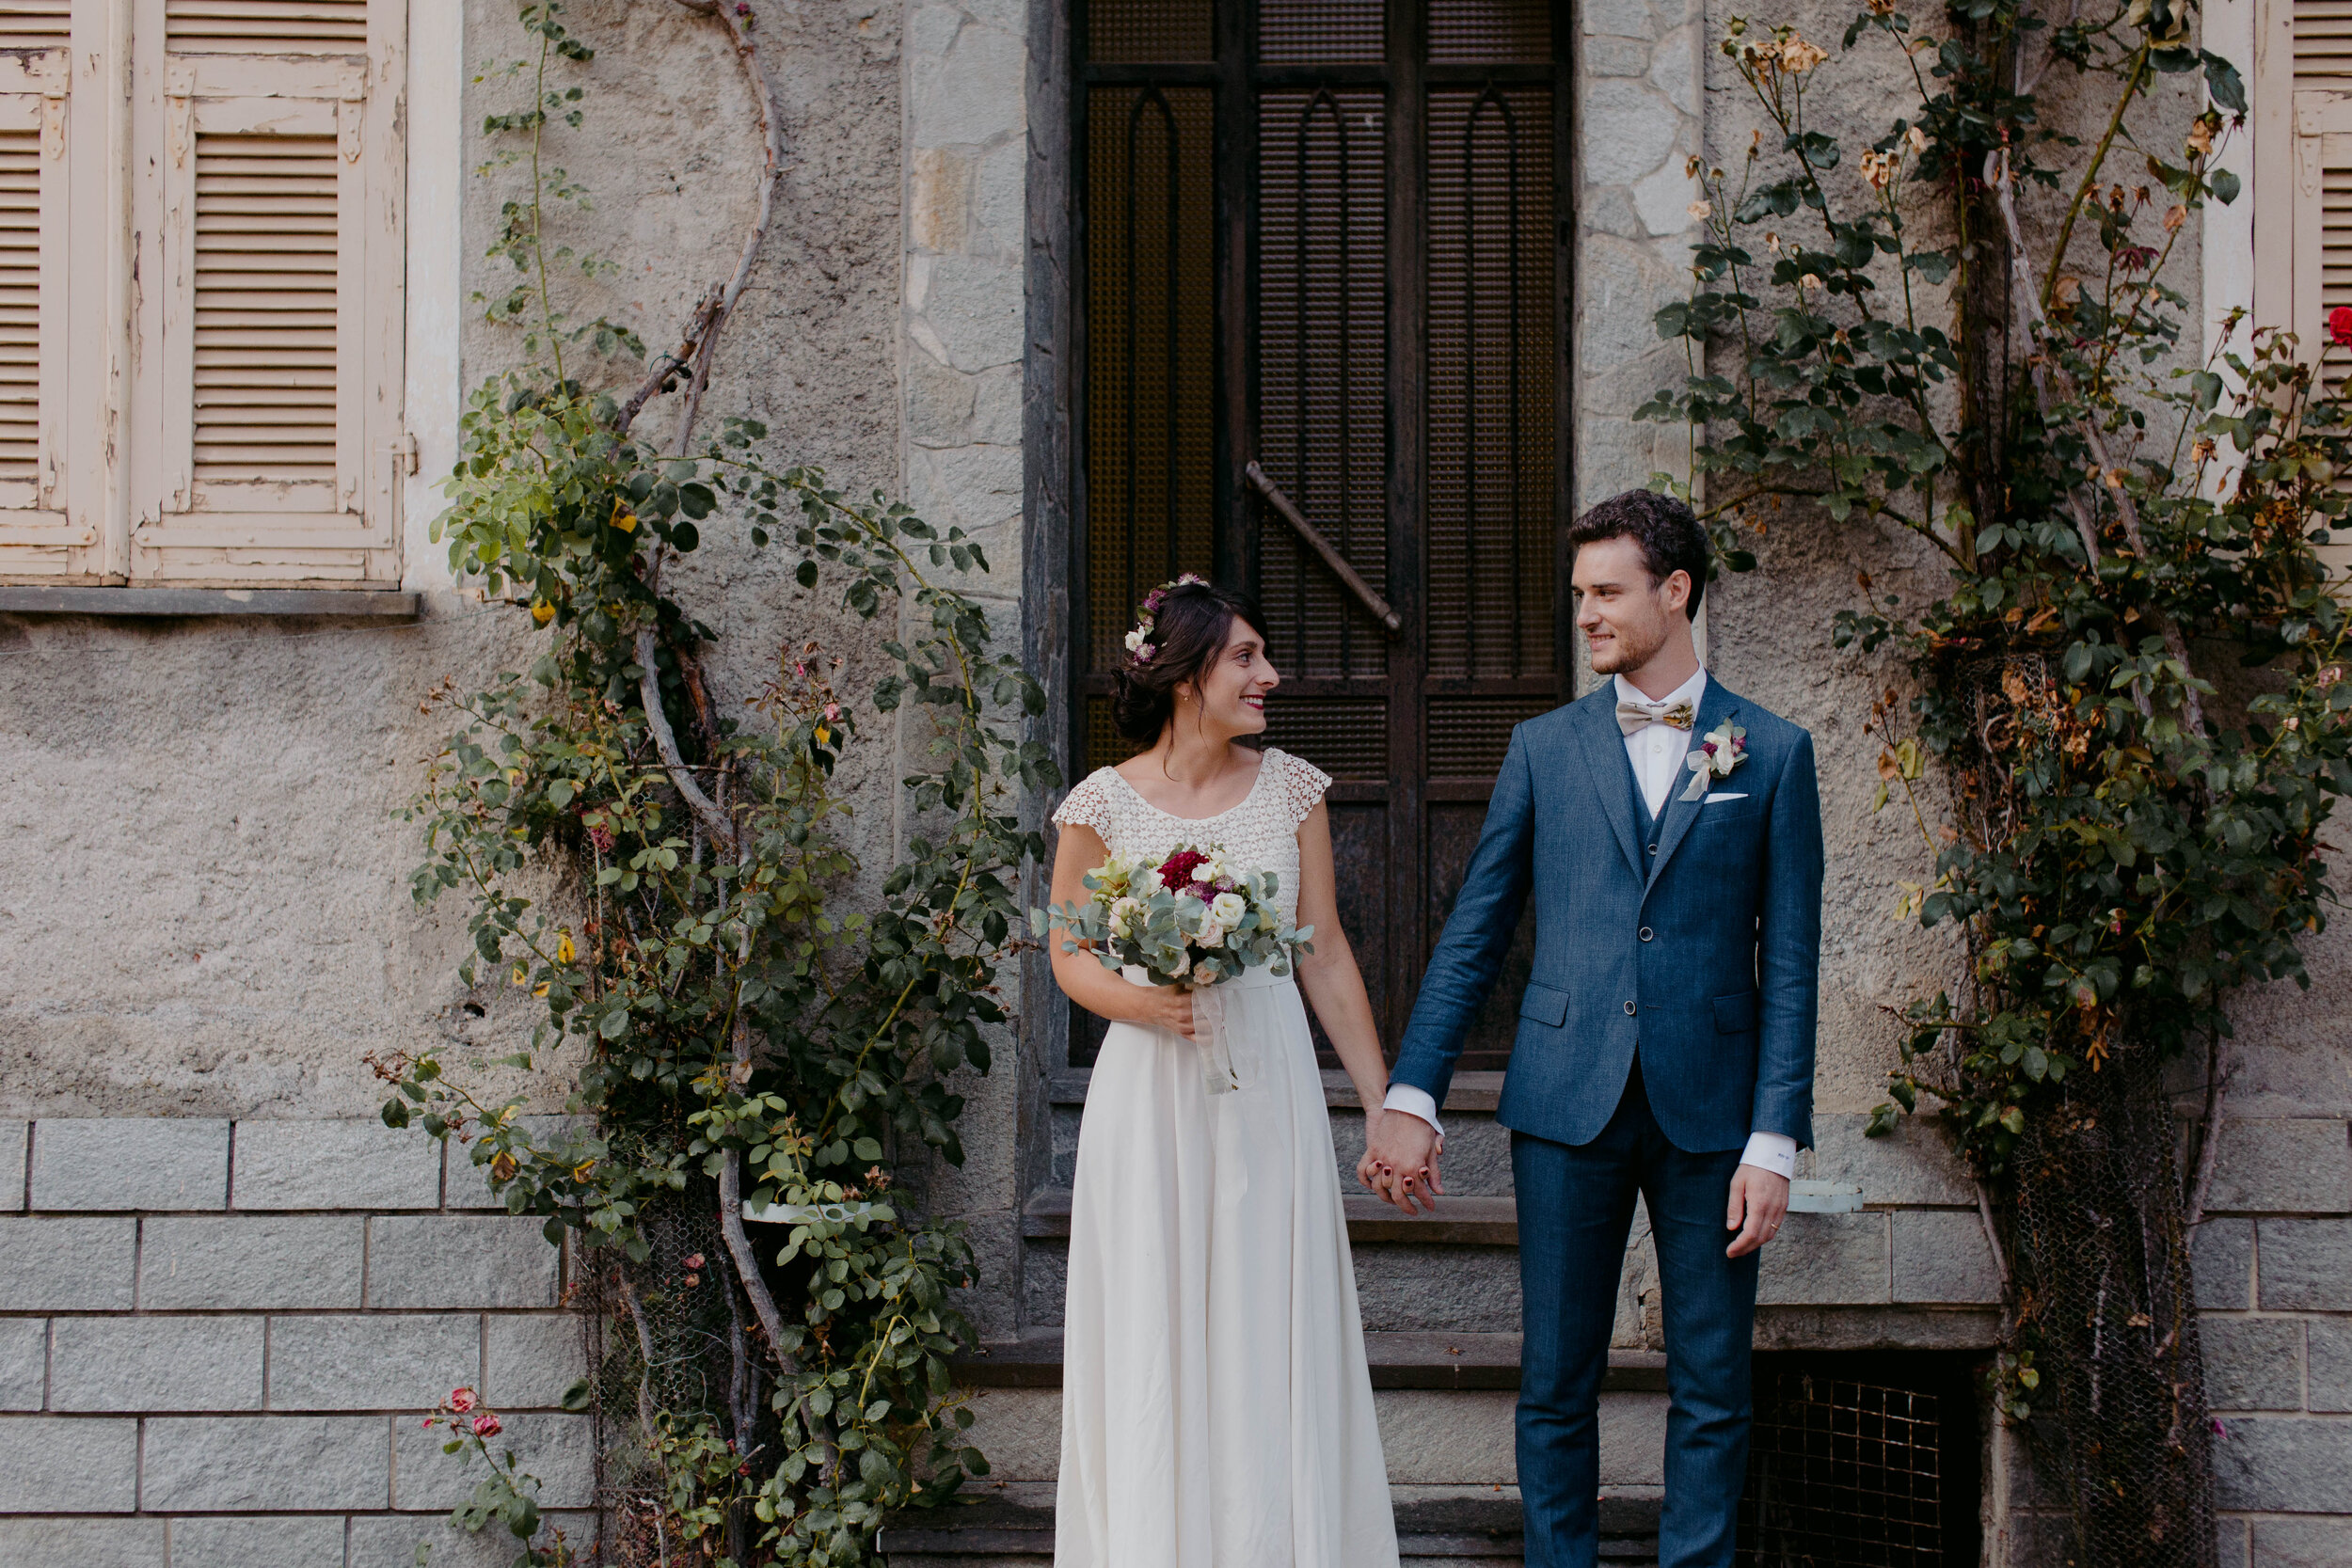 062 - Matrimonio in provincia di Cuneo - Miriam Callegari Fotografa.JPG